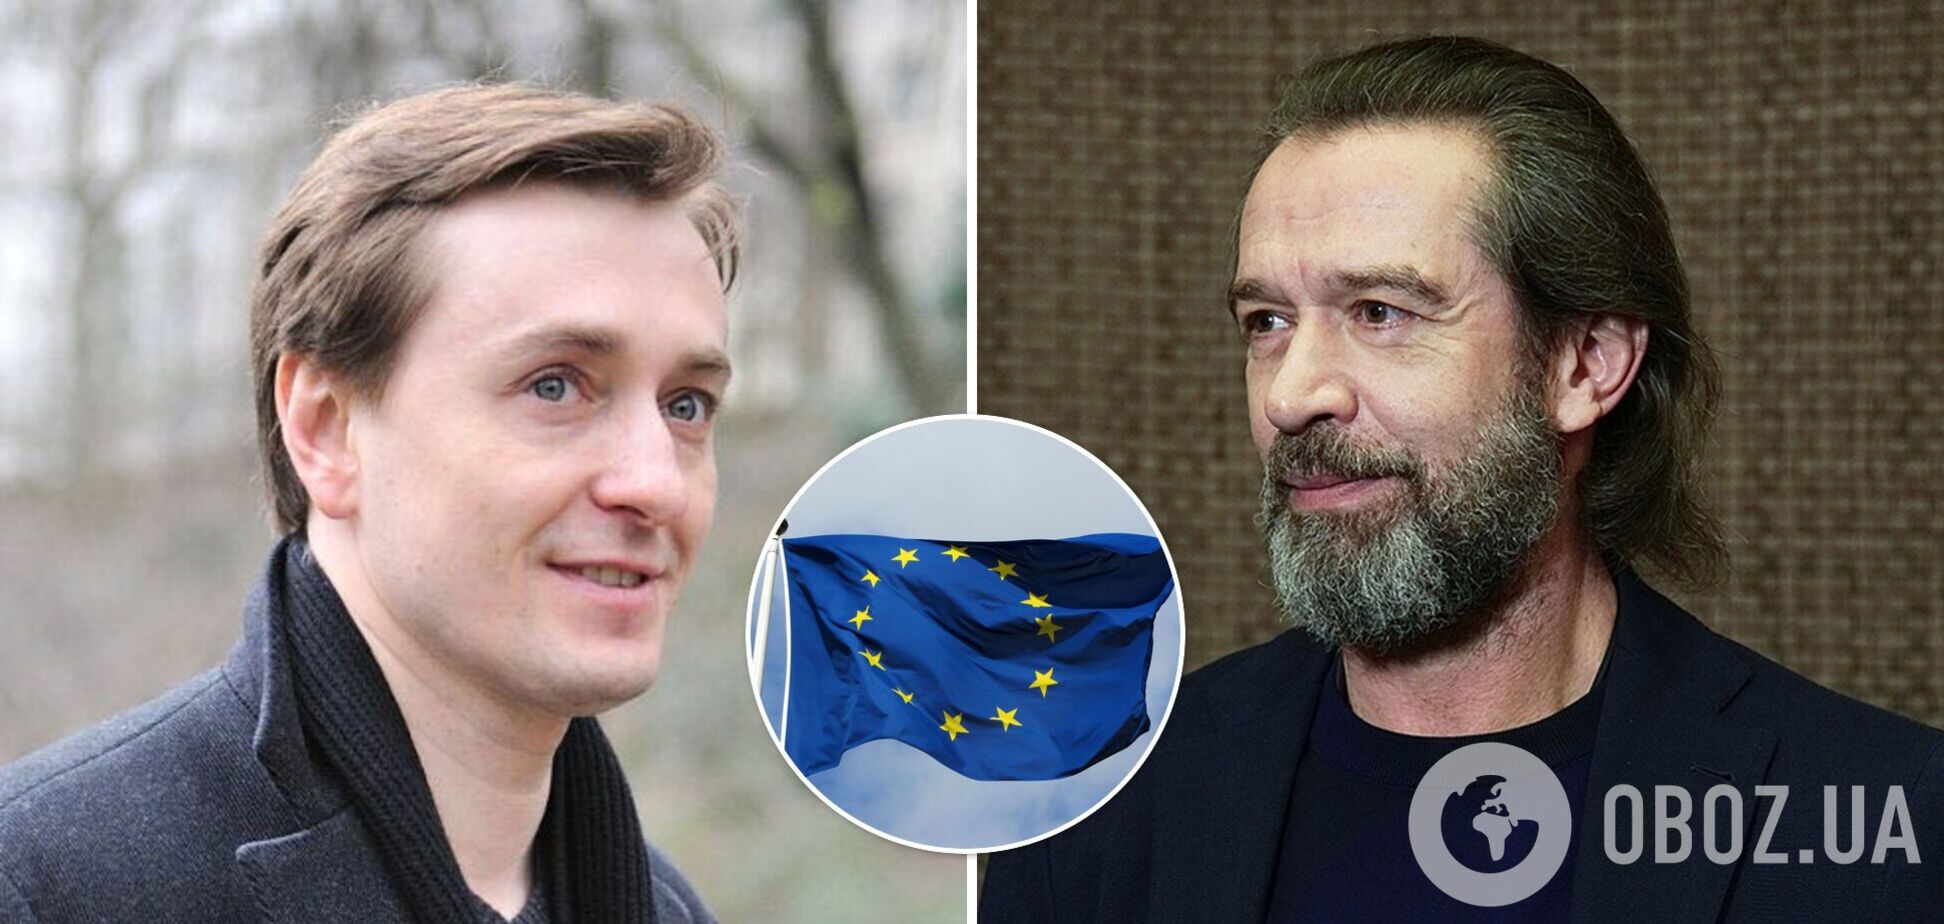 Машков и Безруков попали под санкции ЕС за поддержку Путина и войны в Украине